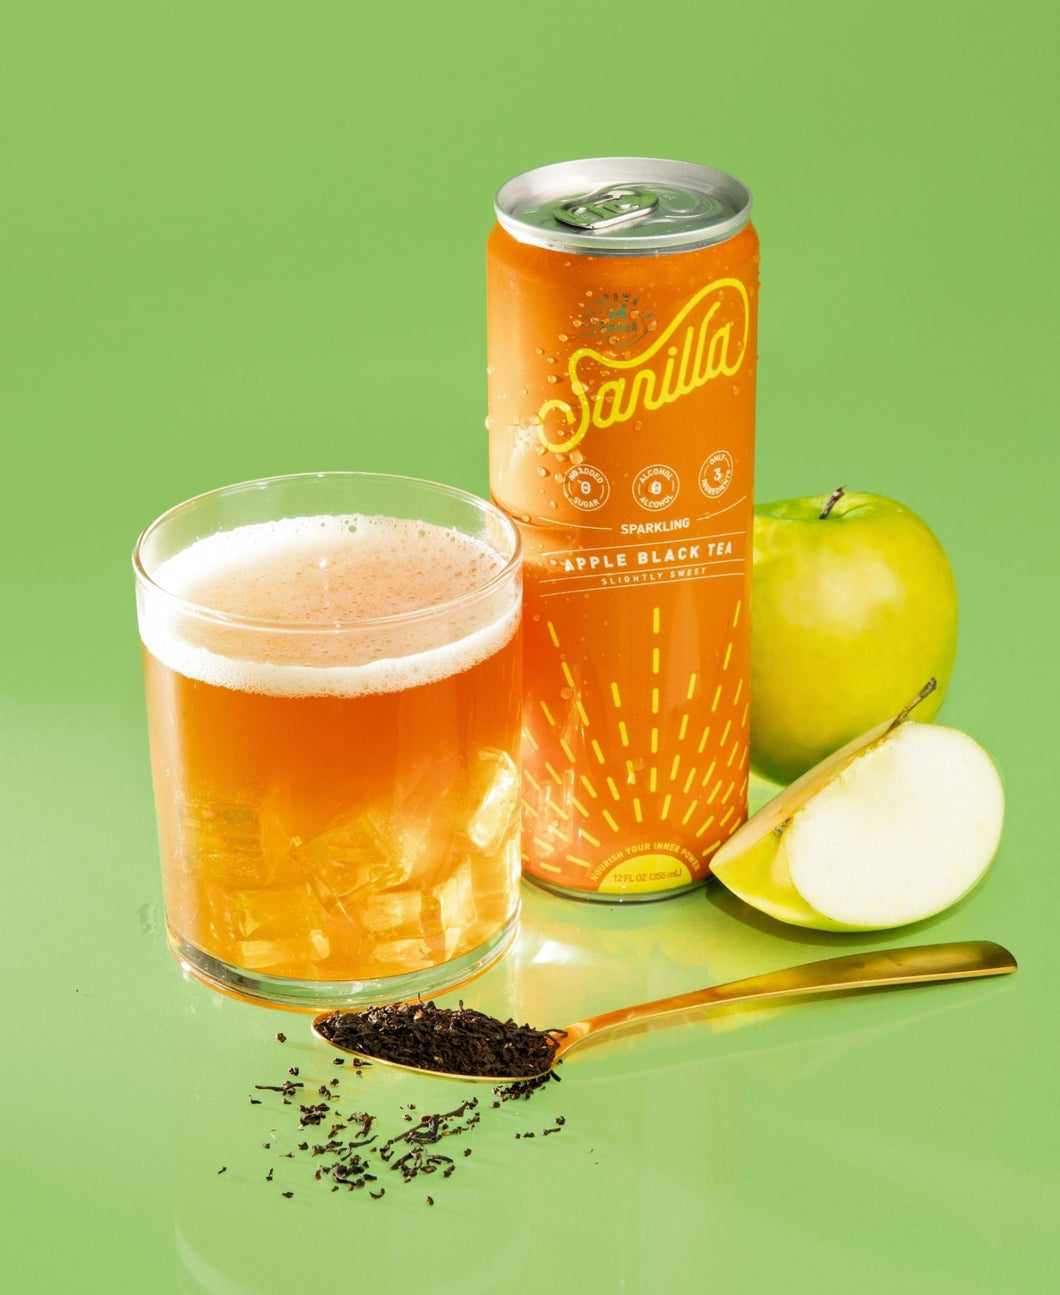 Drink Sarilla - Sarilla Apple Black, Organic, Fair Trade - | Delivery near me in ... Farm2Me #url#